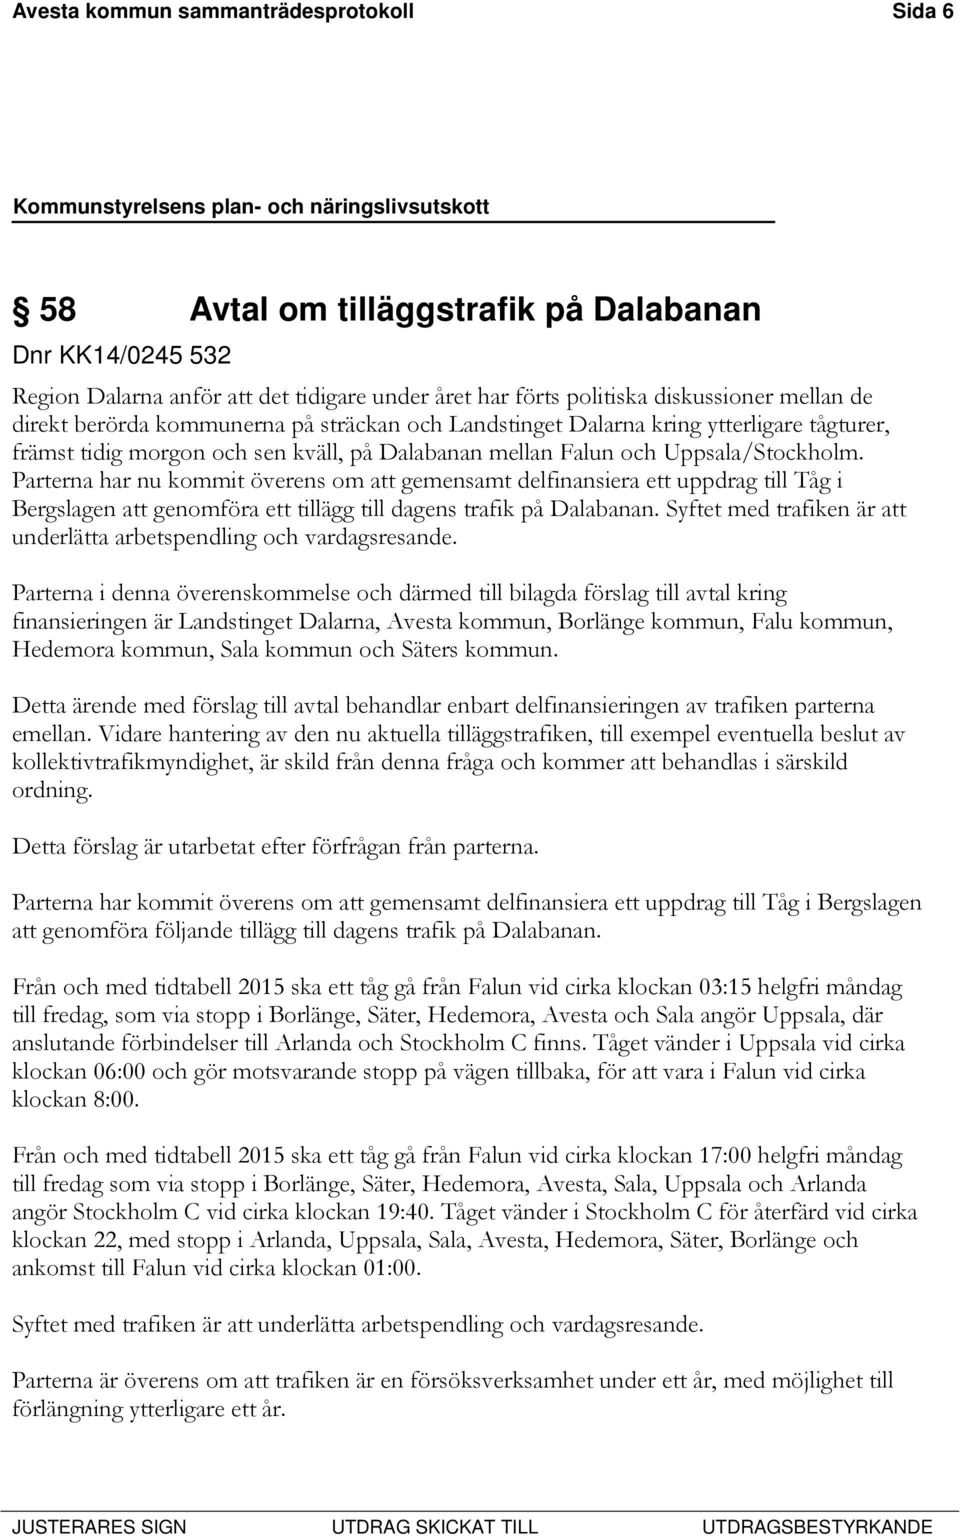 Parterna har nu kommit överens om att gemensamt delfinansiera ett uppdrag till Tåg i Bergslagen att genomföra ett tillägg till dagens trafik på Dalabanan.